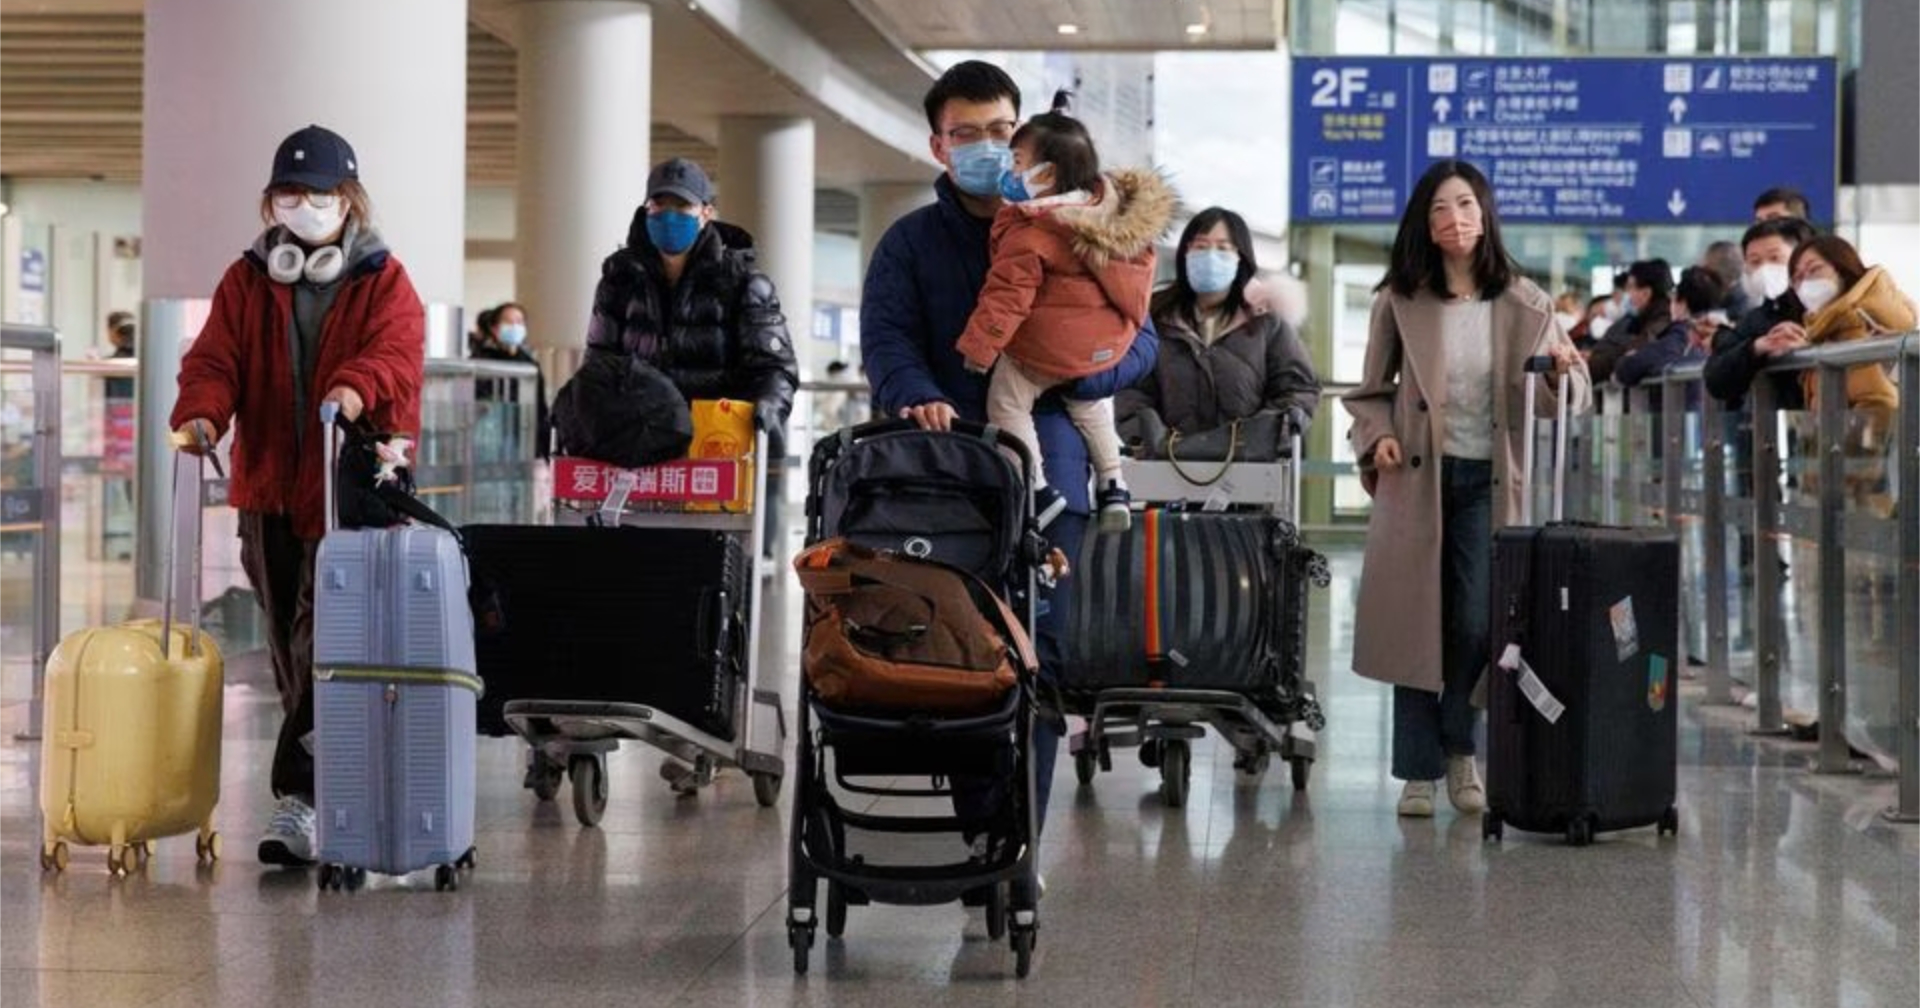 ชาวจีนเดินทางเข้า – ออกประเทศแล้วเกือบ 40 ล้านครั้งในช่วง 2 เดือนที่ผ่านมา